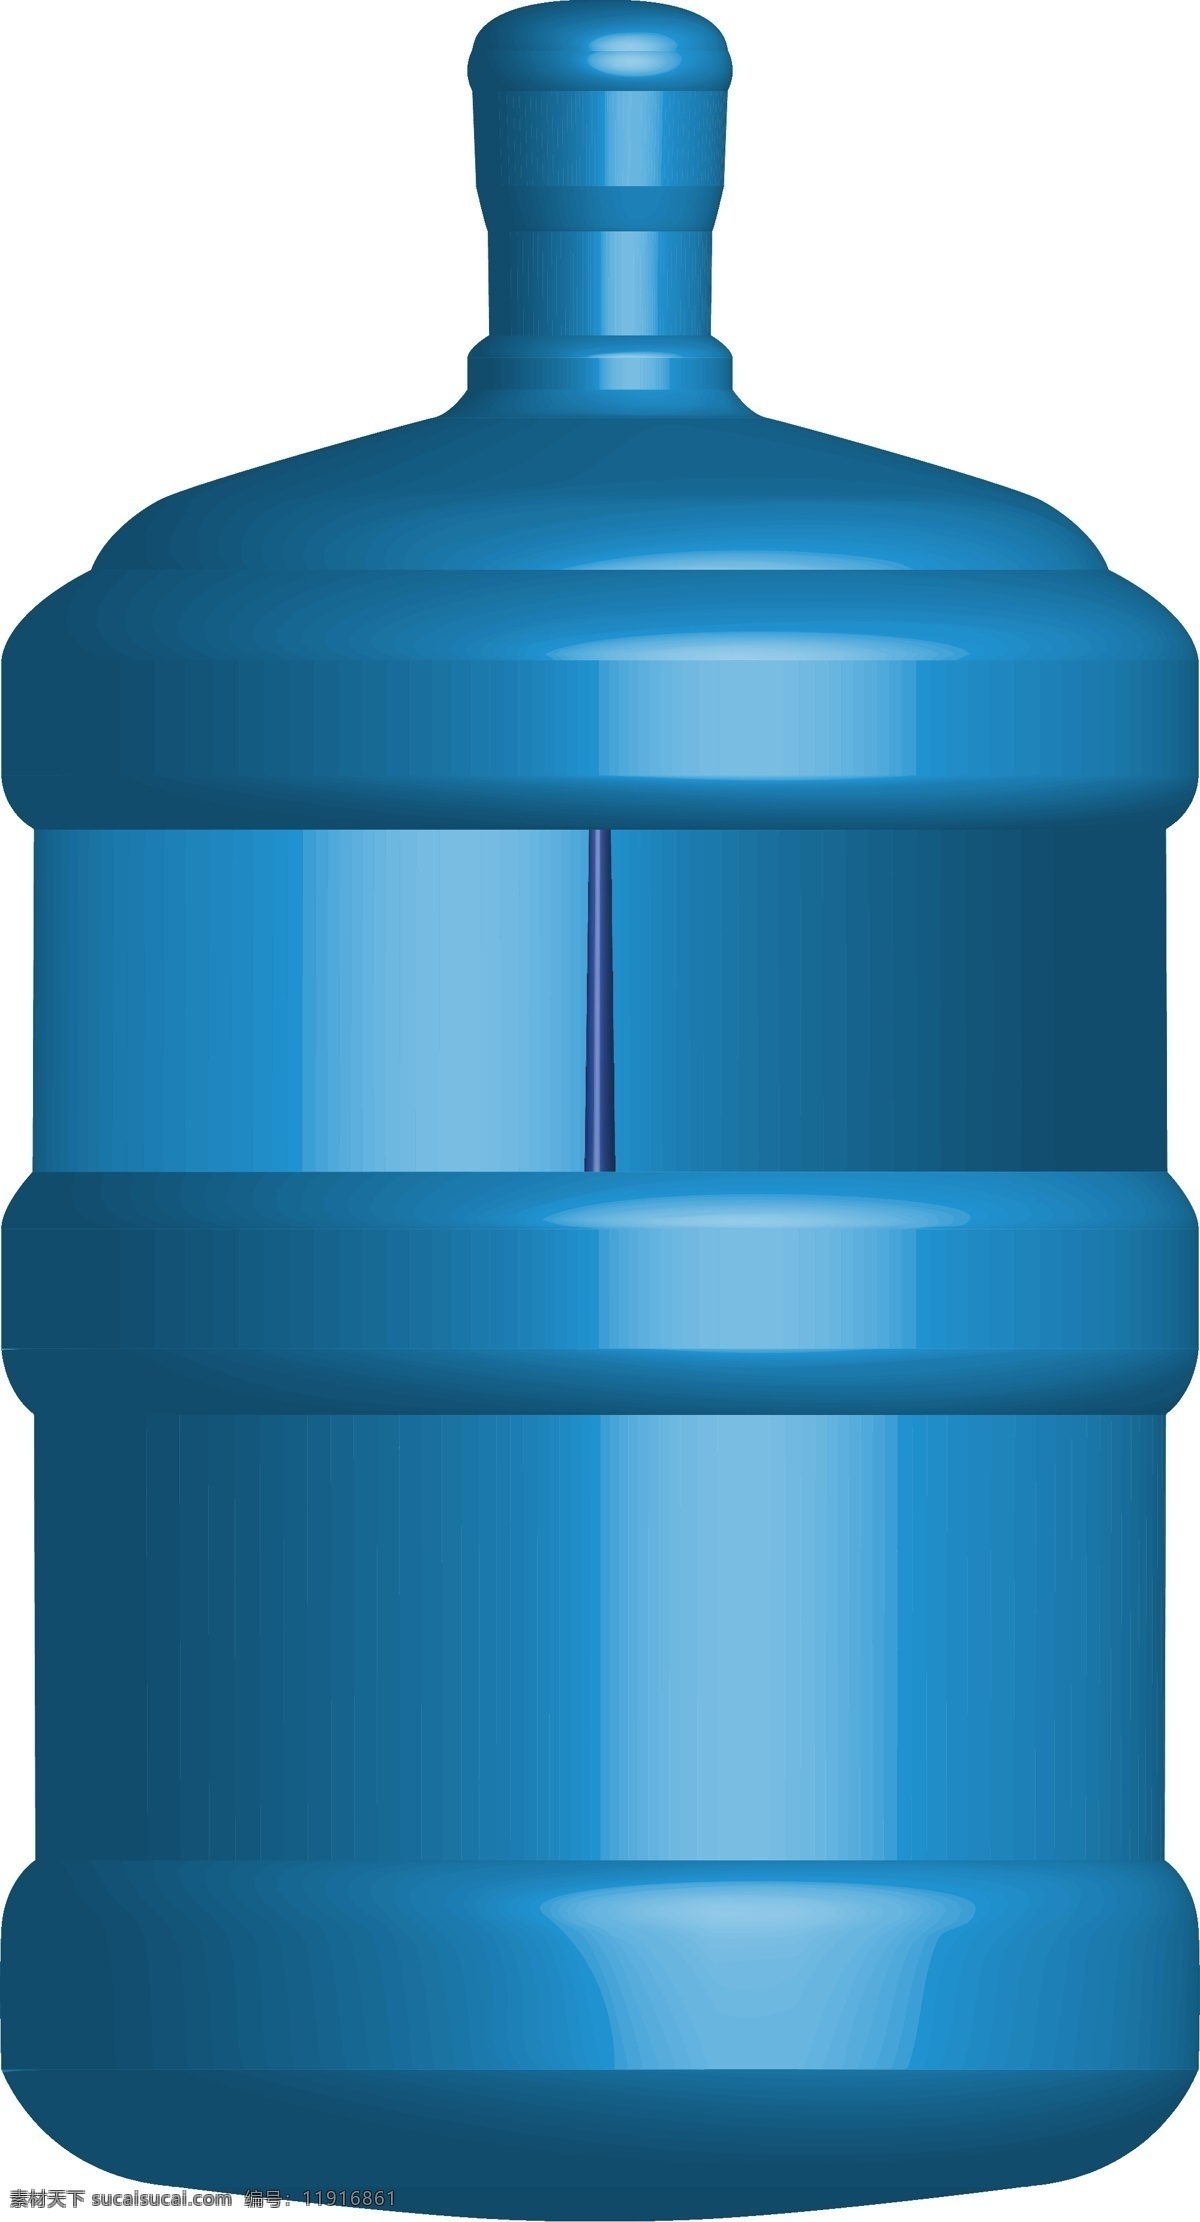 水桶模型图片 水桶模型 桶装水 桶 空桶 模型设计 效果图模型 3d设计 其他模型